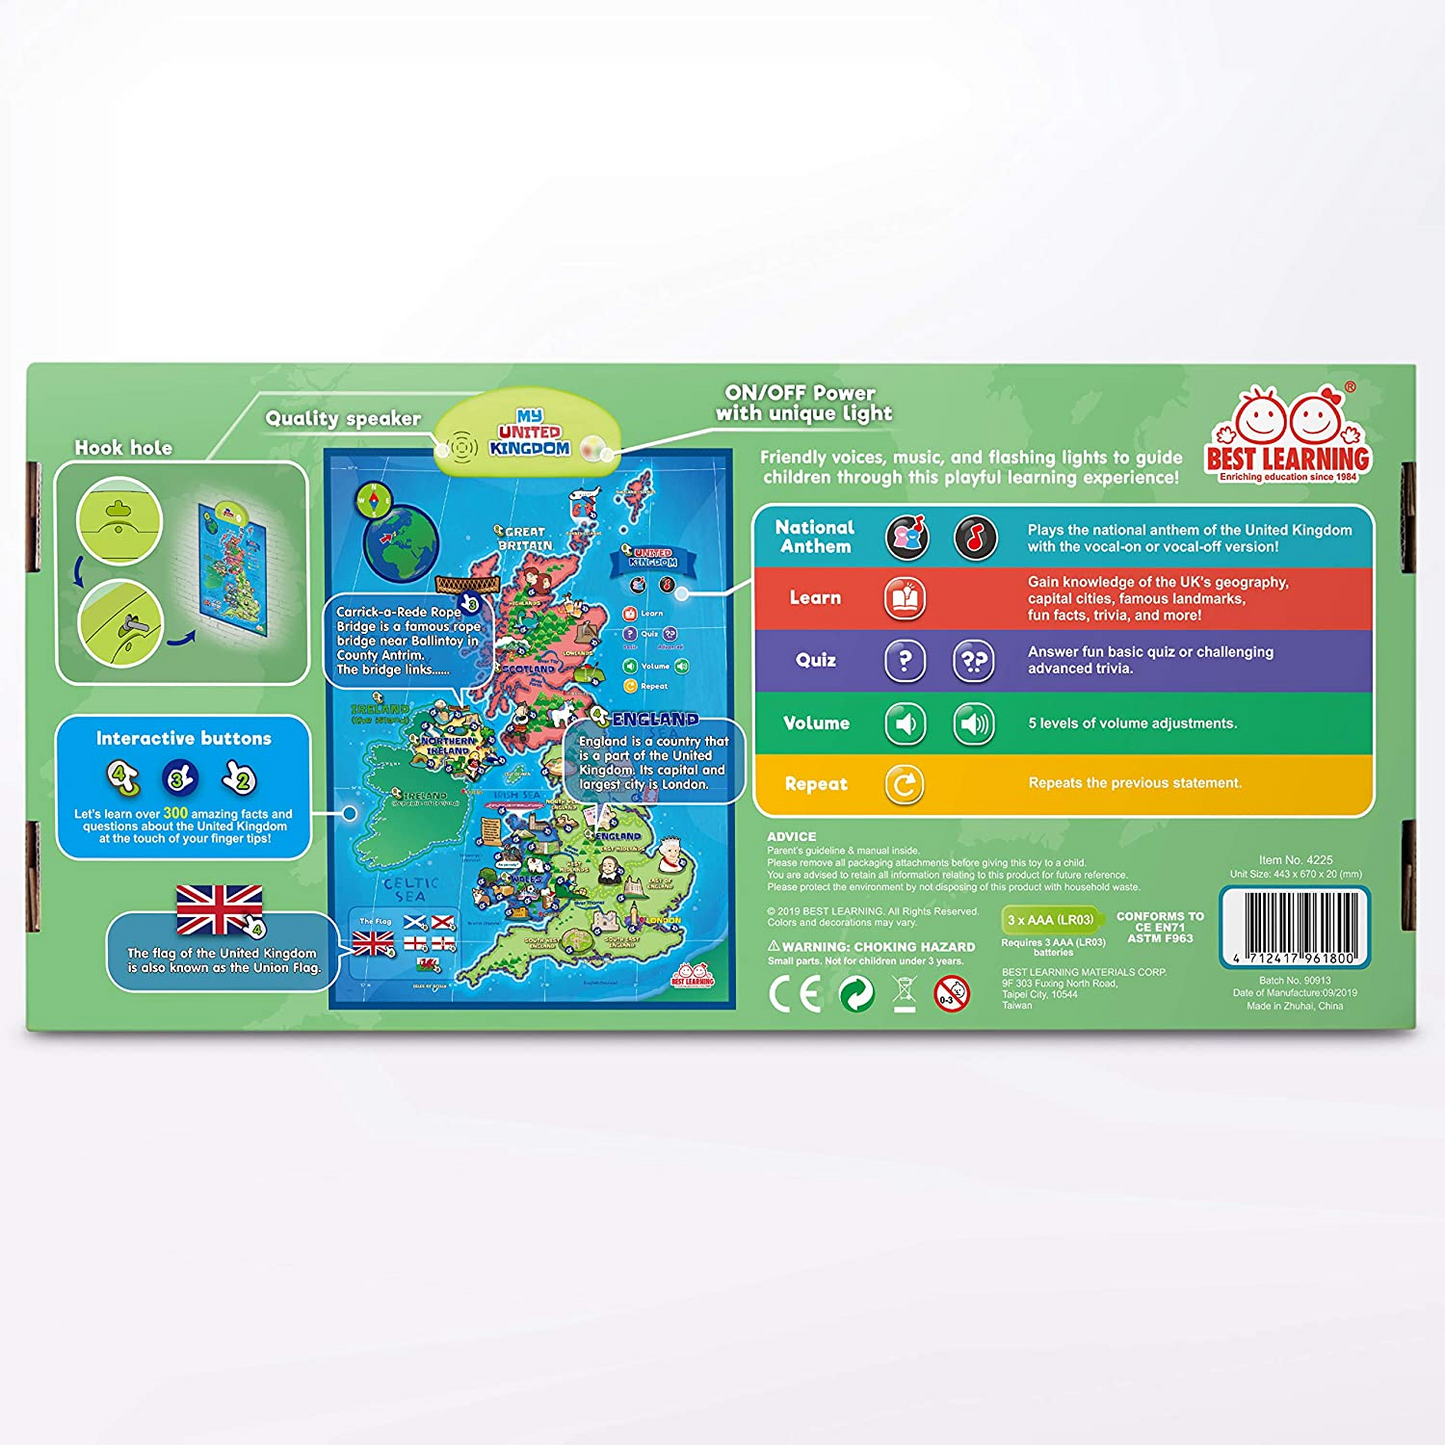 BEST LEARNING i-Poster Meu mapa interativo do Reino Unido - Brinquedo falante educacional para meninos e meninas de 5 a 12 anos para crianças | Jogo eletrônico de geografia do Reino Unido 5, 6, 7 presente de aniversário